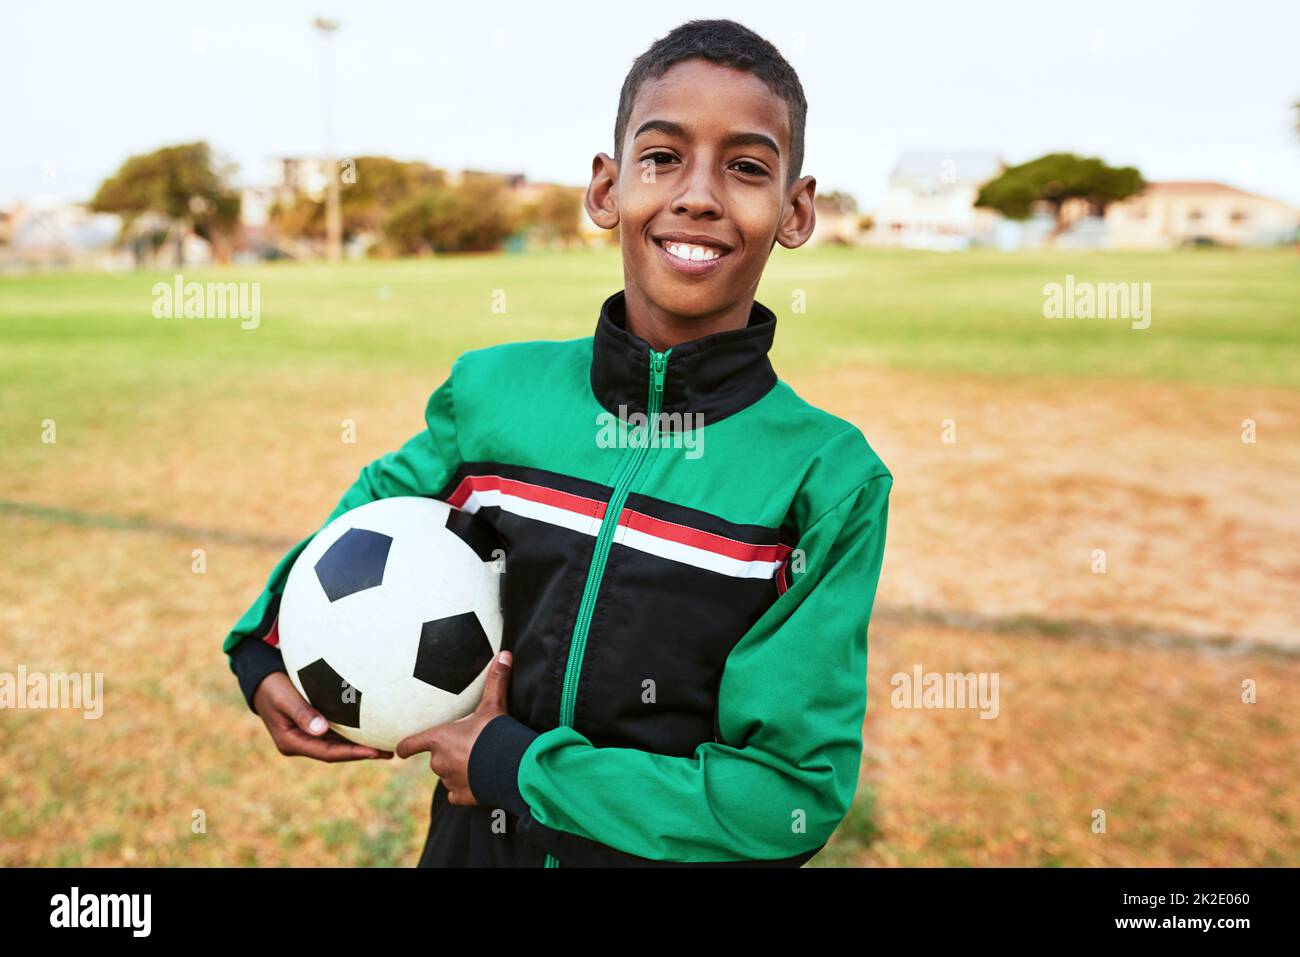 Es ist gut, Ziele zu haben. Porträt eines Jungen, der auf einem Sportplatz Fußball spielt. Stockfoto